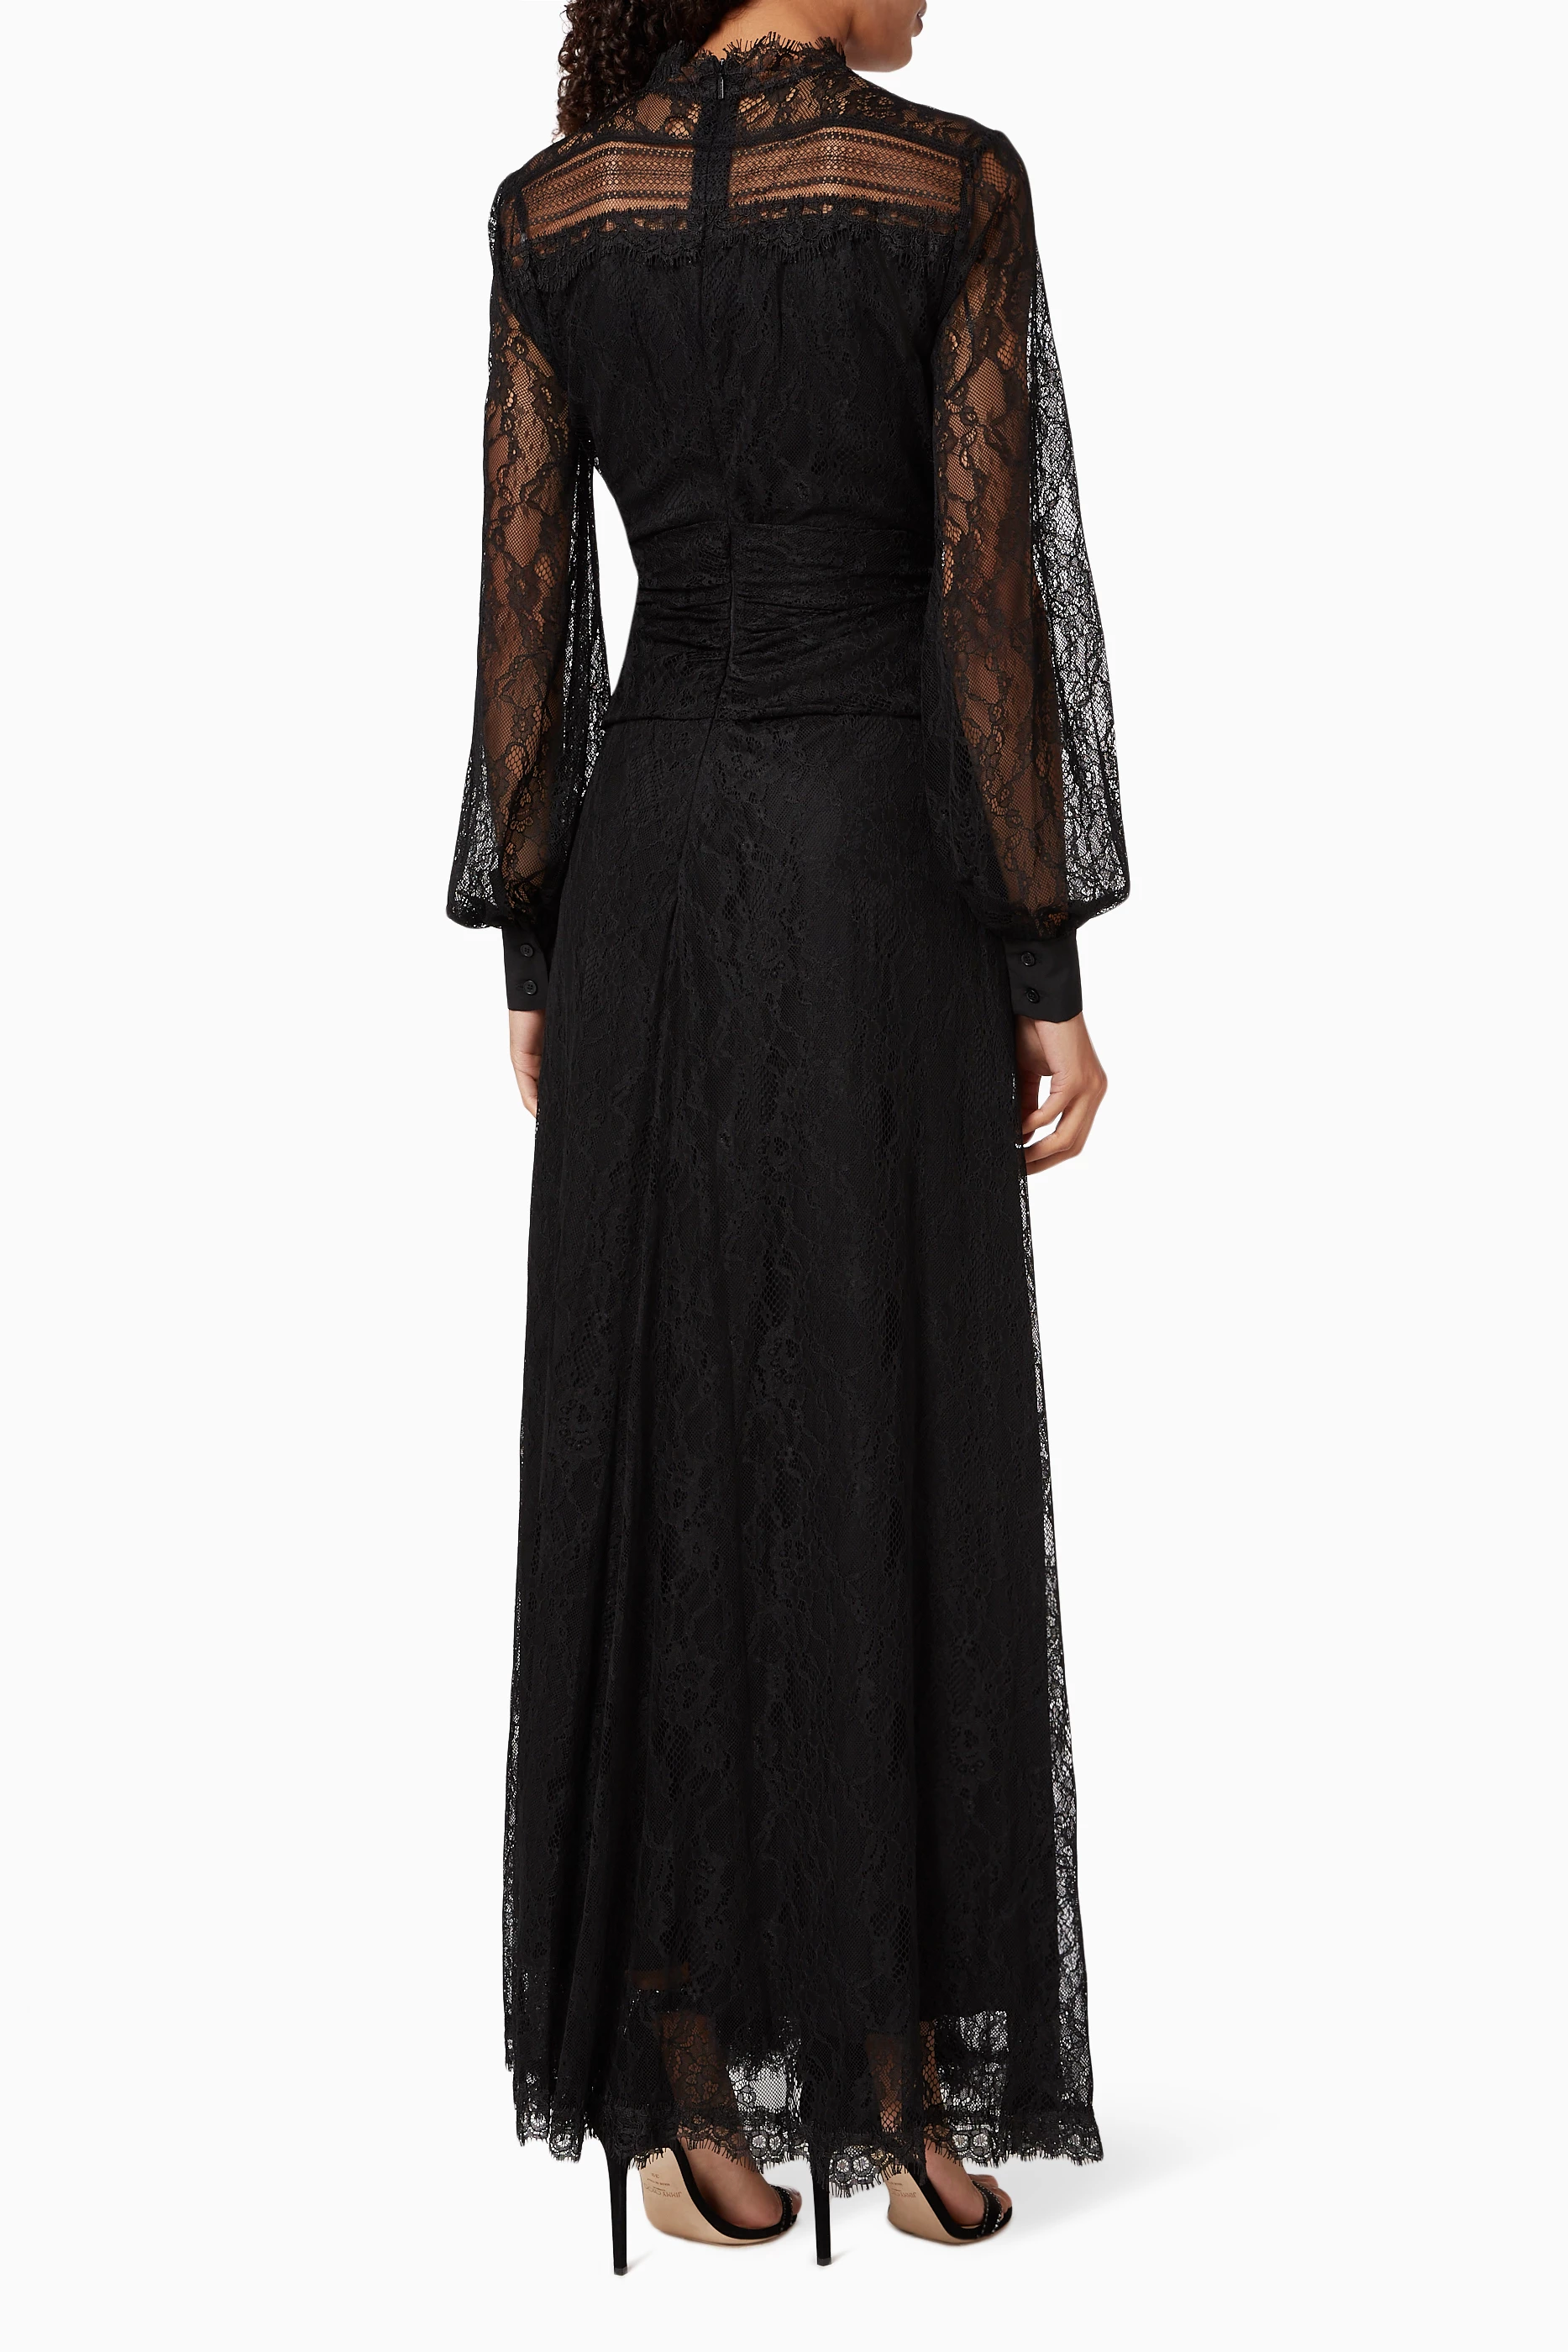 Full launch unrelated تسوق فستان سبوزاري طويل بدانتيل بينكو أسود للالنساء | اُناس المملكة العربية  السعودية